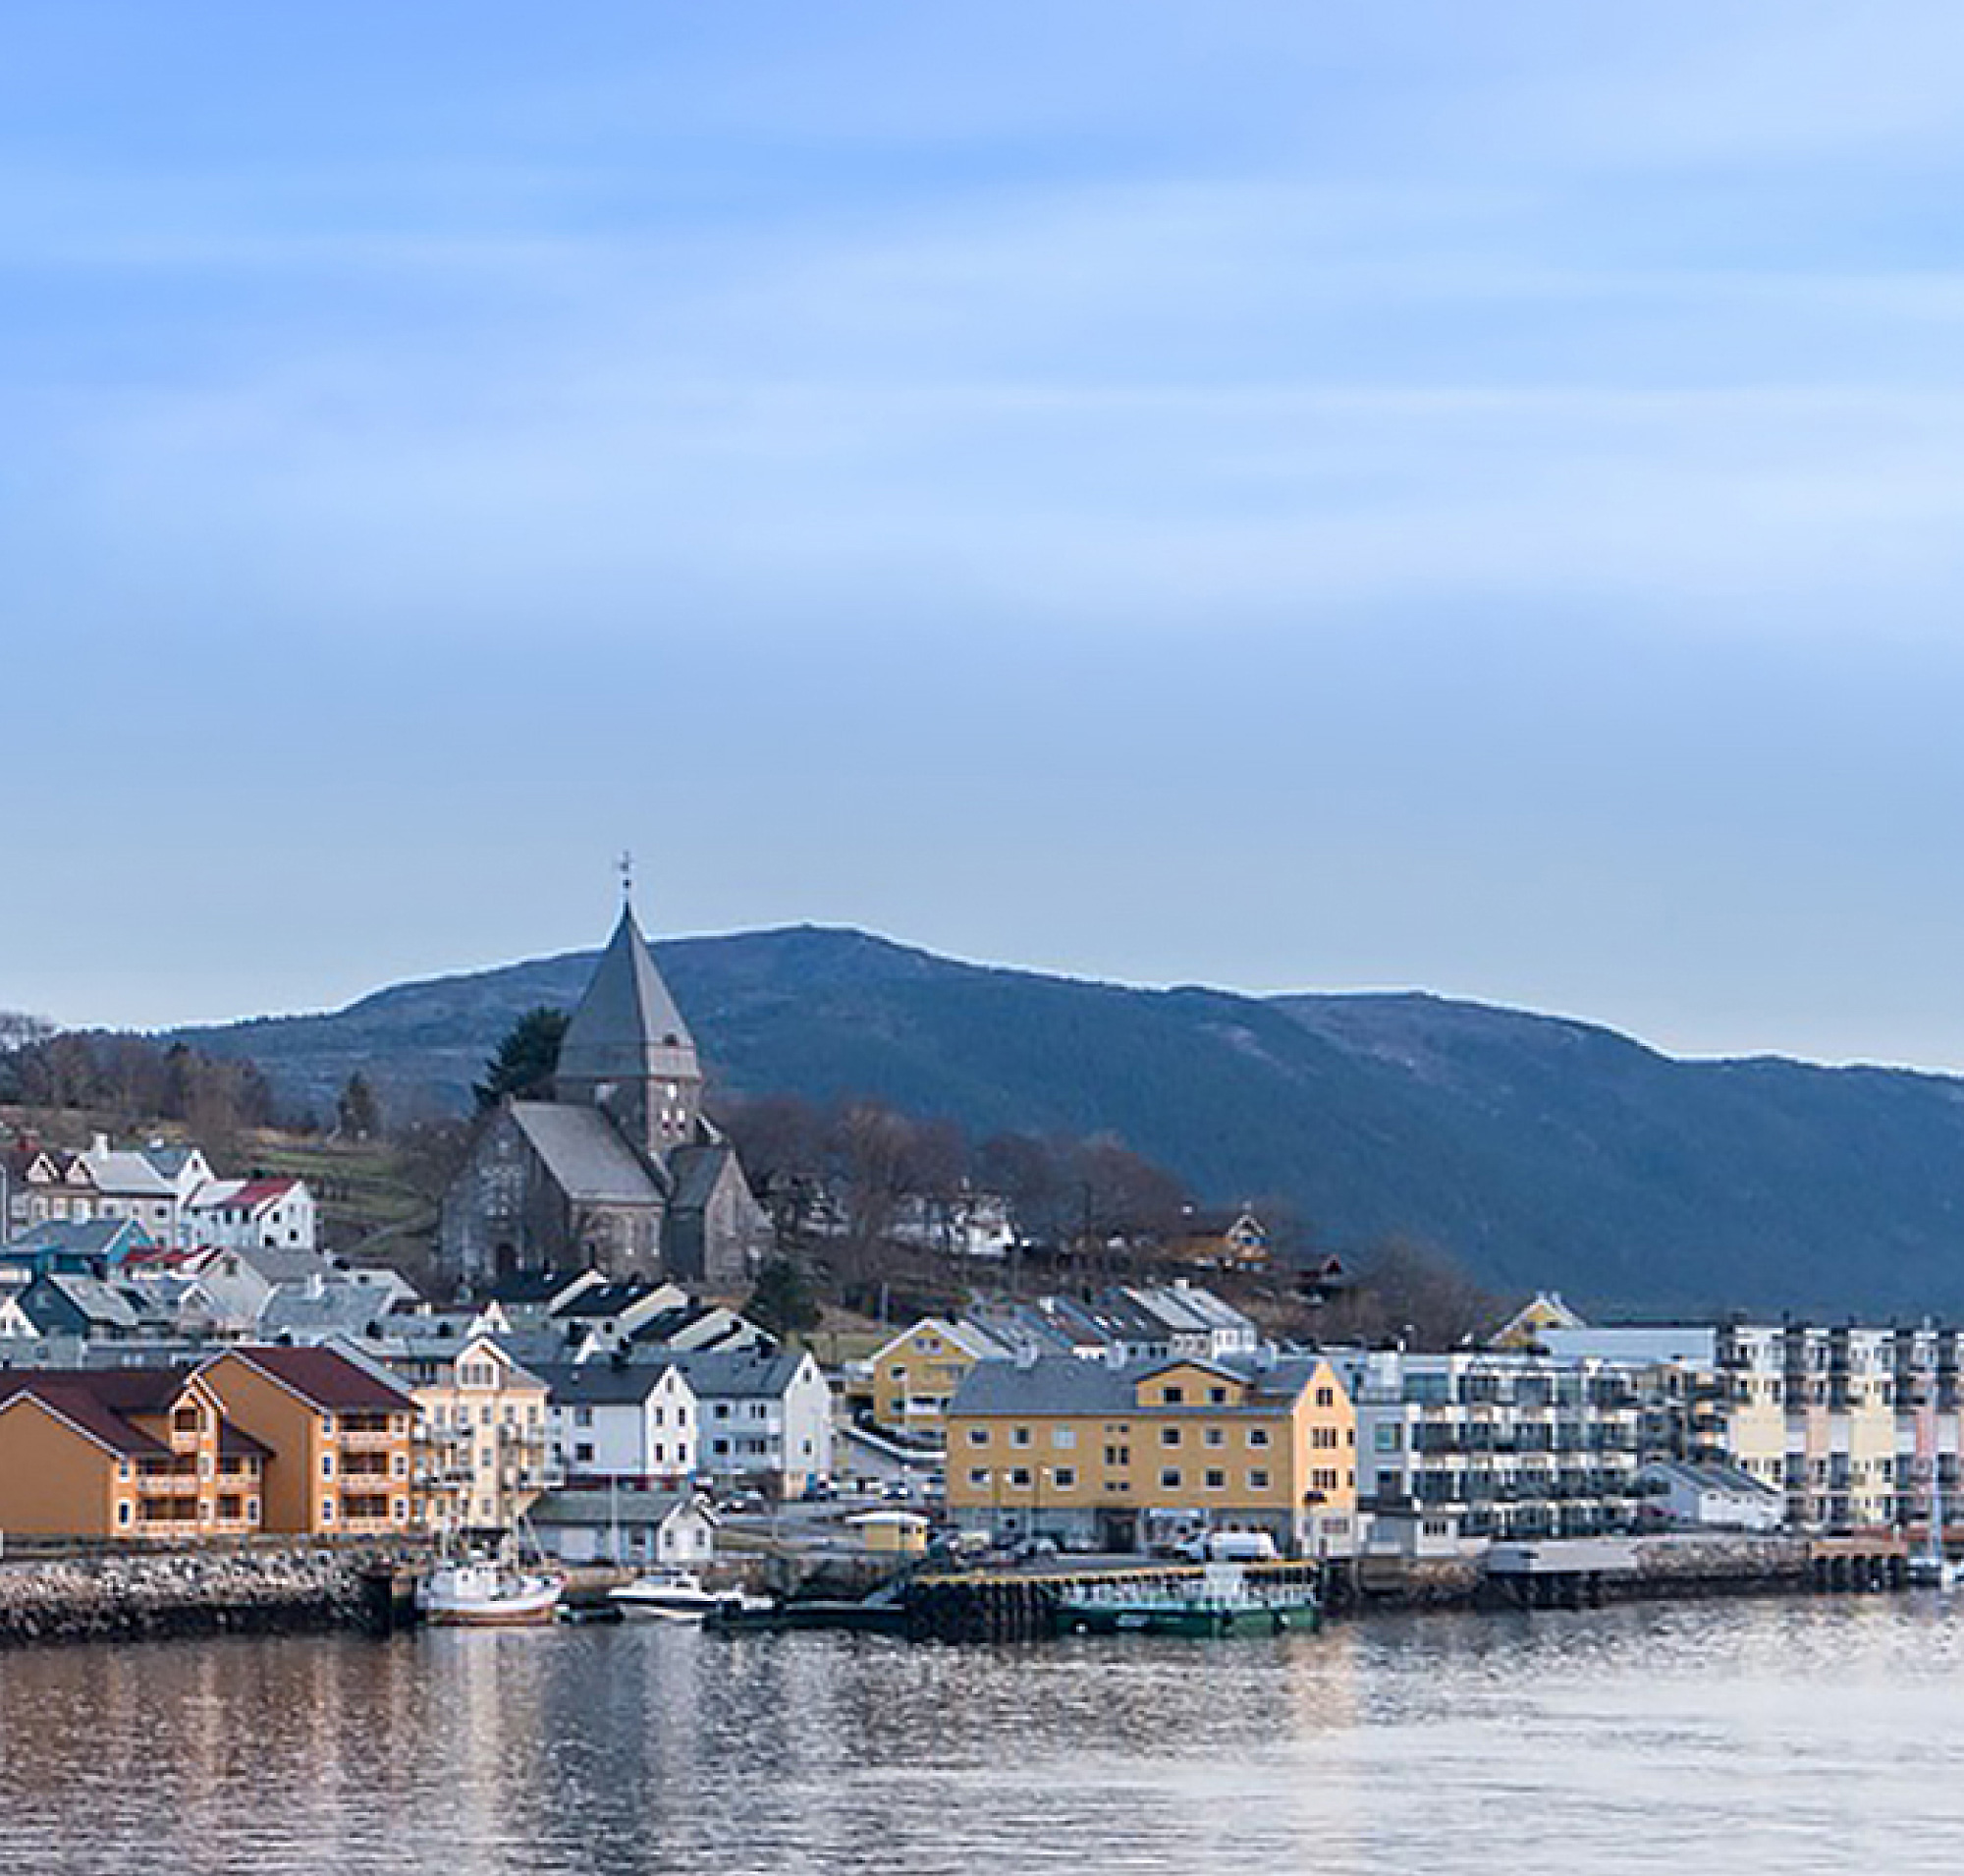 Vista panorâmica de uma cidade costeira norueguesa com edifícios coloridos e uma igreja proeminente, tendo como pano de fundo as colinas 